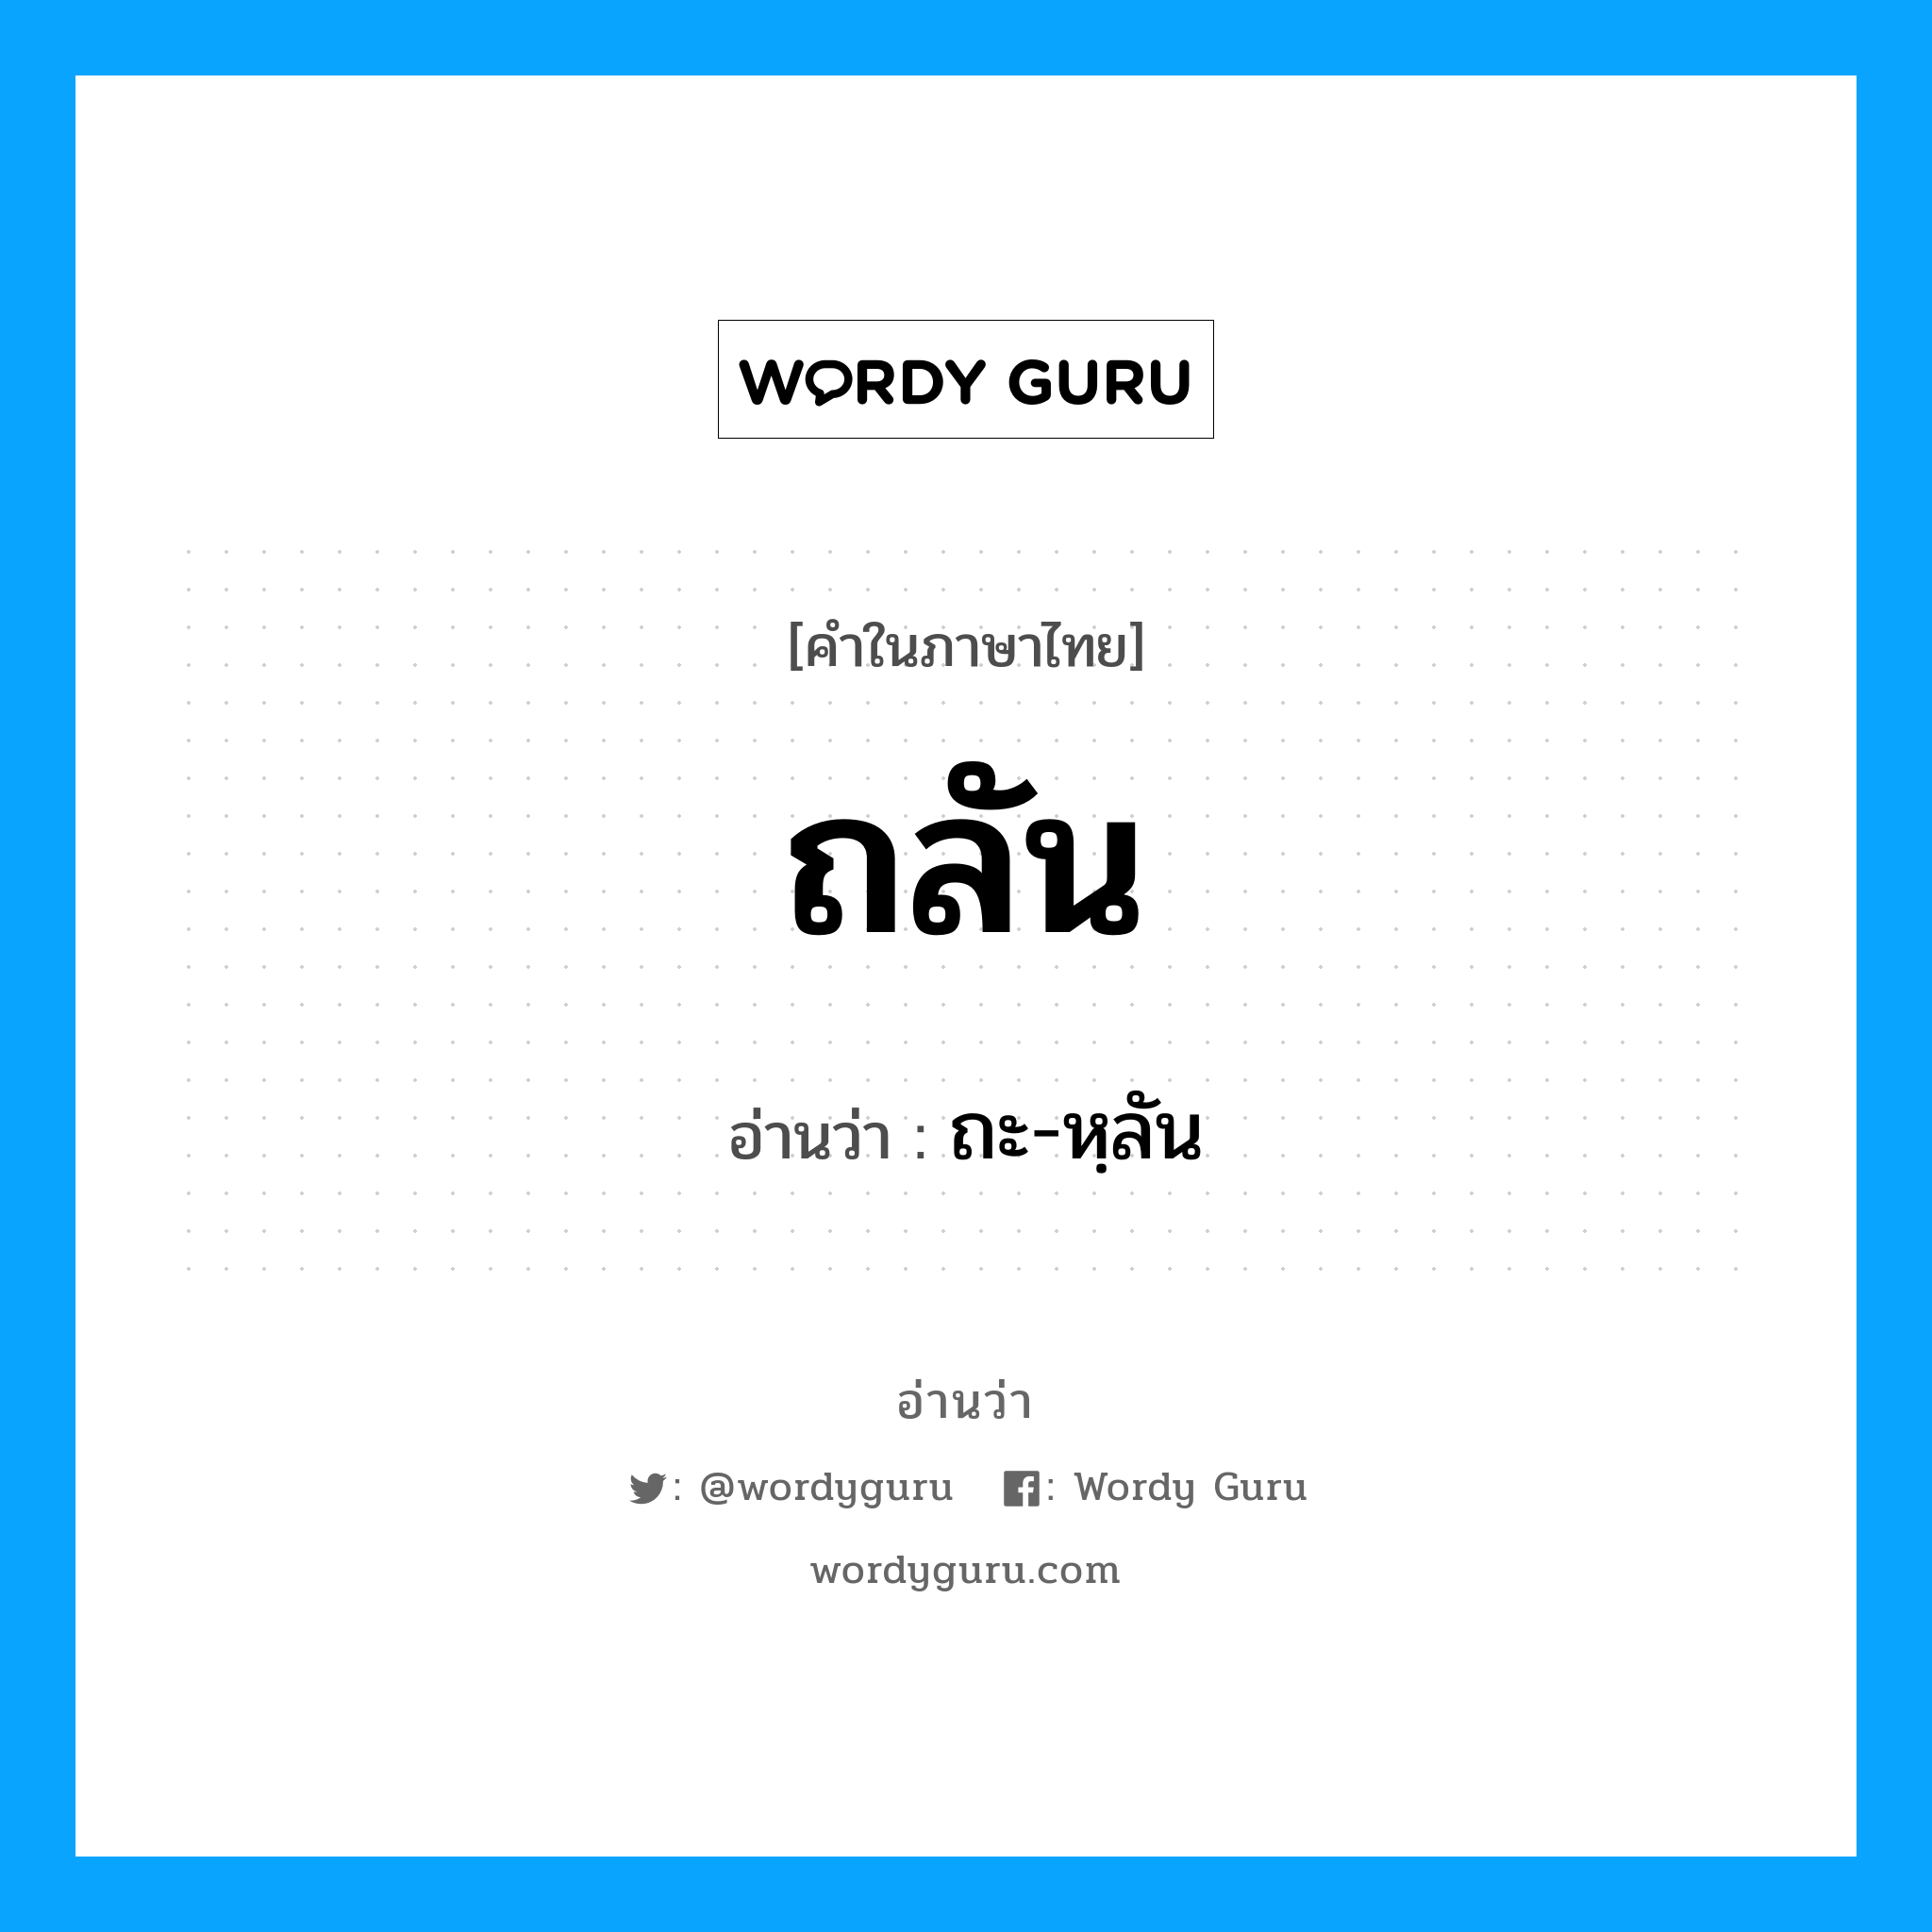 ถะ-หฺลัน เป็นคำอ่านของคำไหน?, คำในภาษาไทย ถะ-หฺลัน อ่านว่า ถลัน